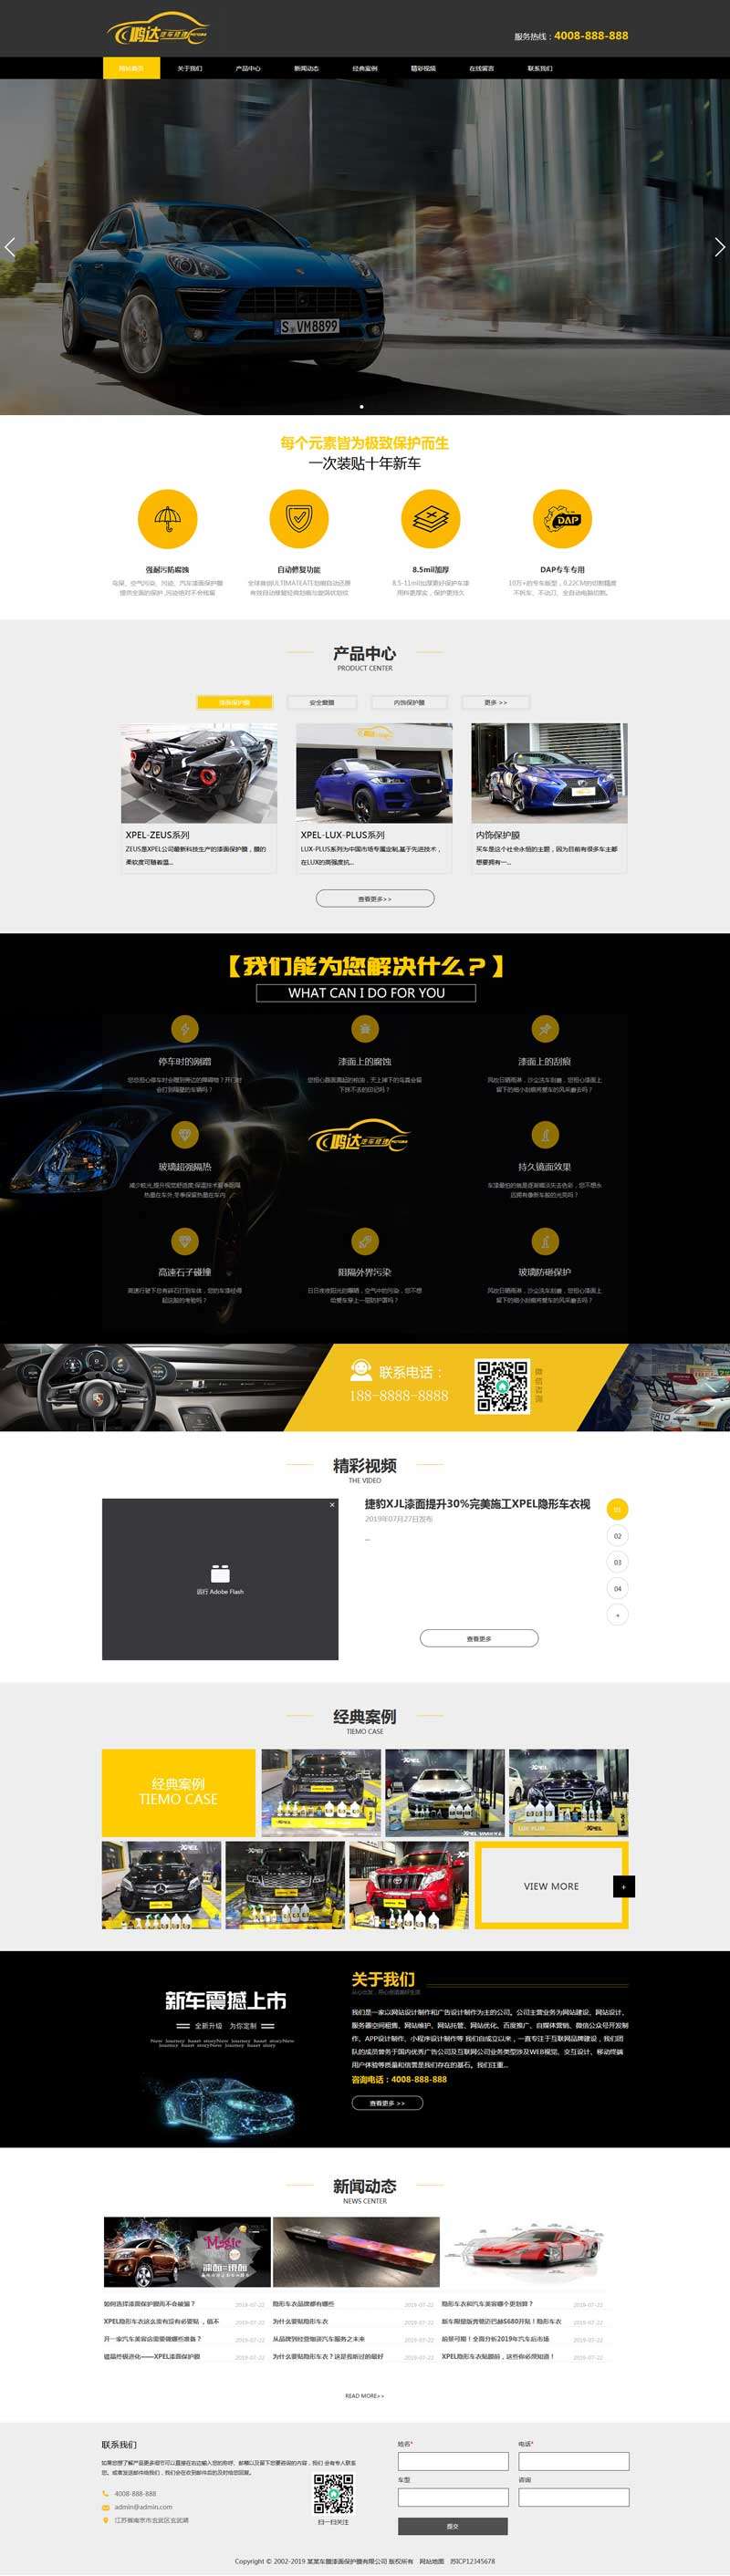 汽车美容维修店铺网站Dedecms织梦模板(含手机网站)效果图